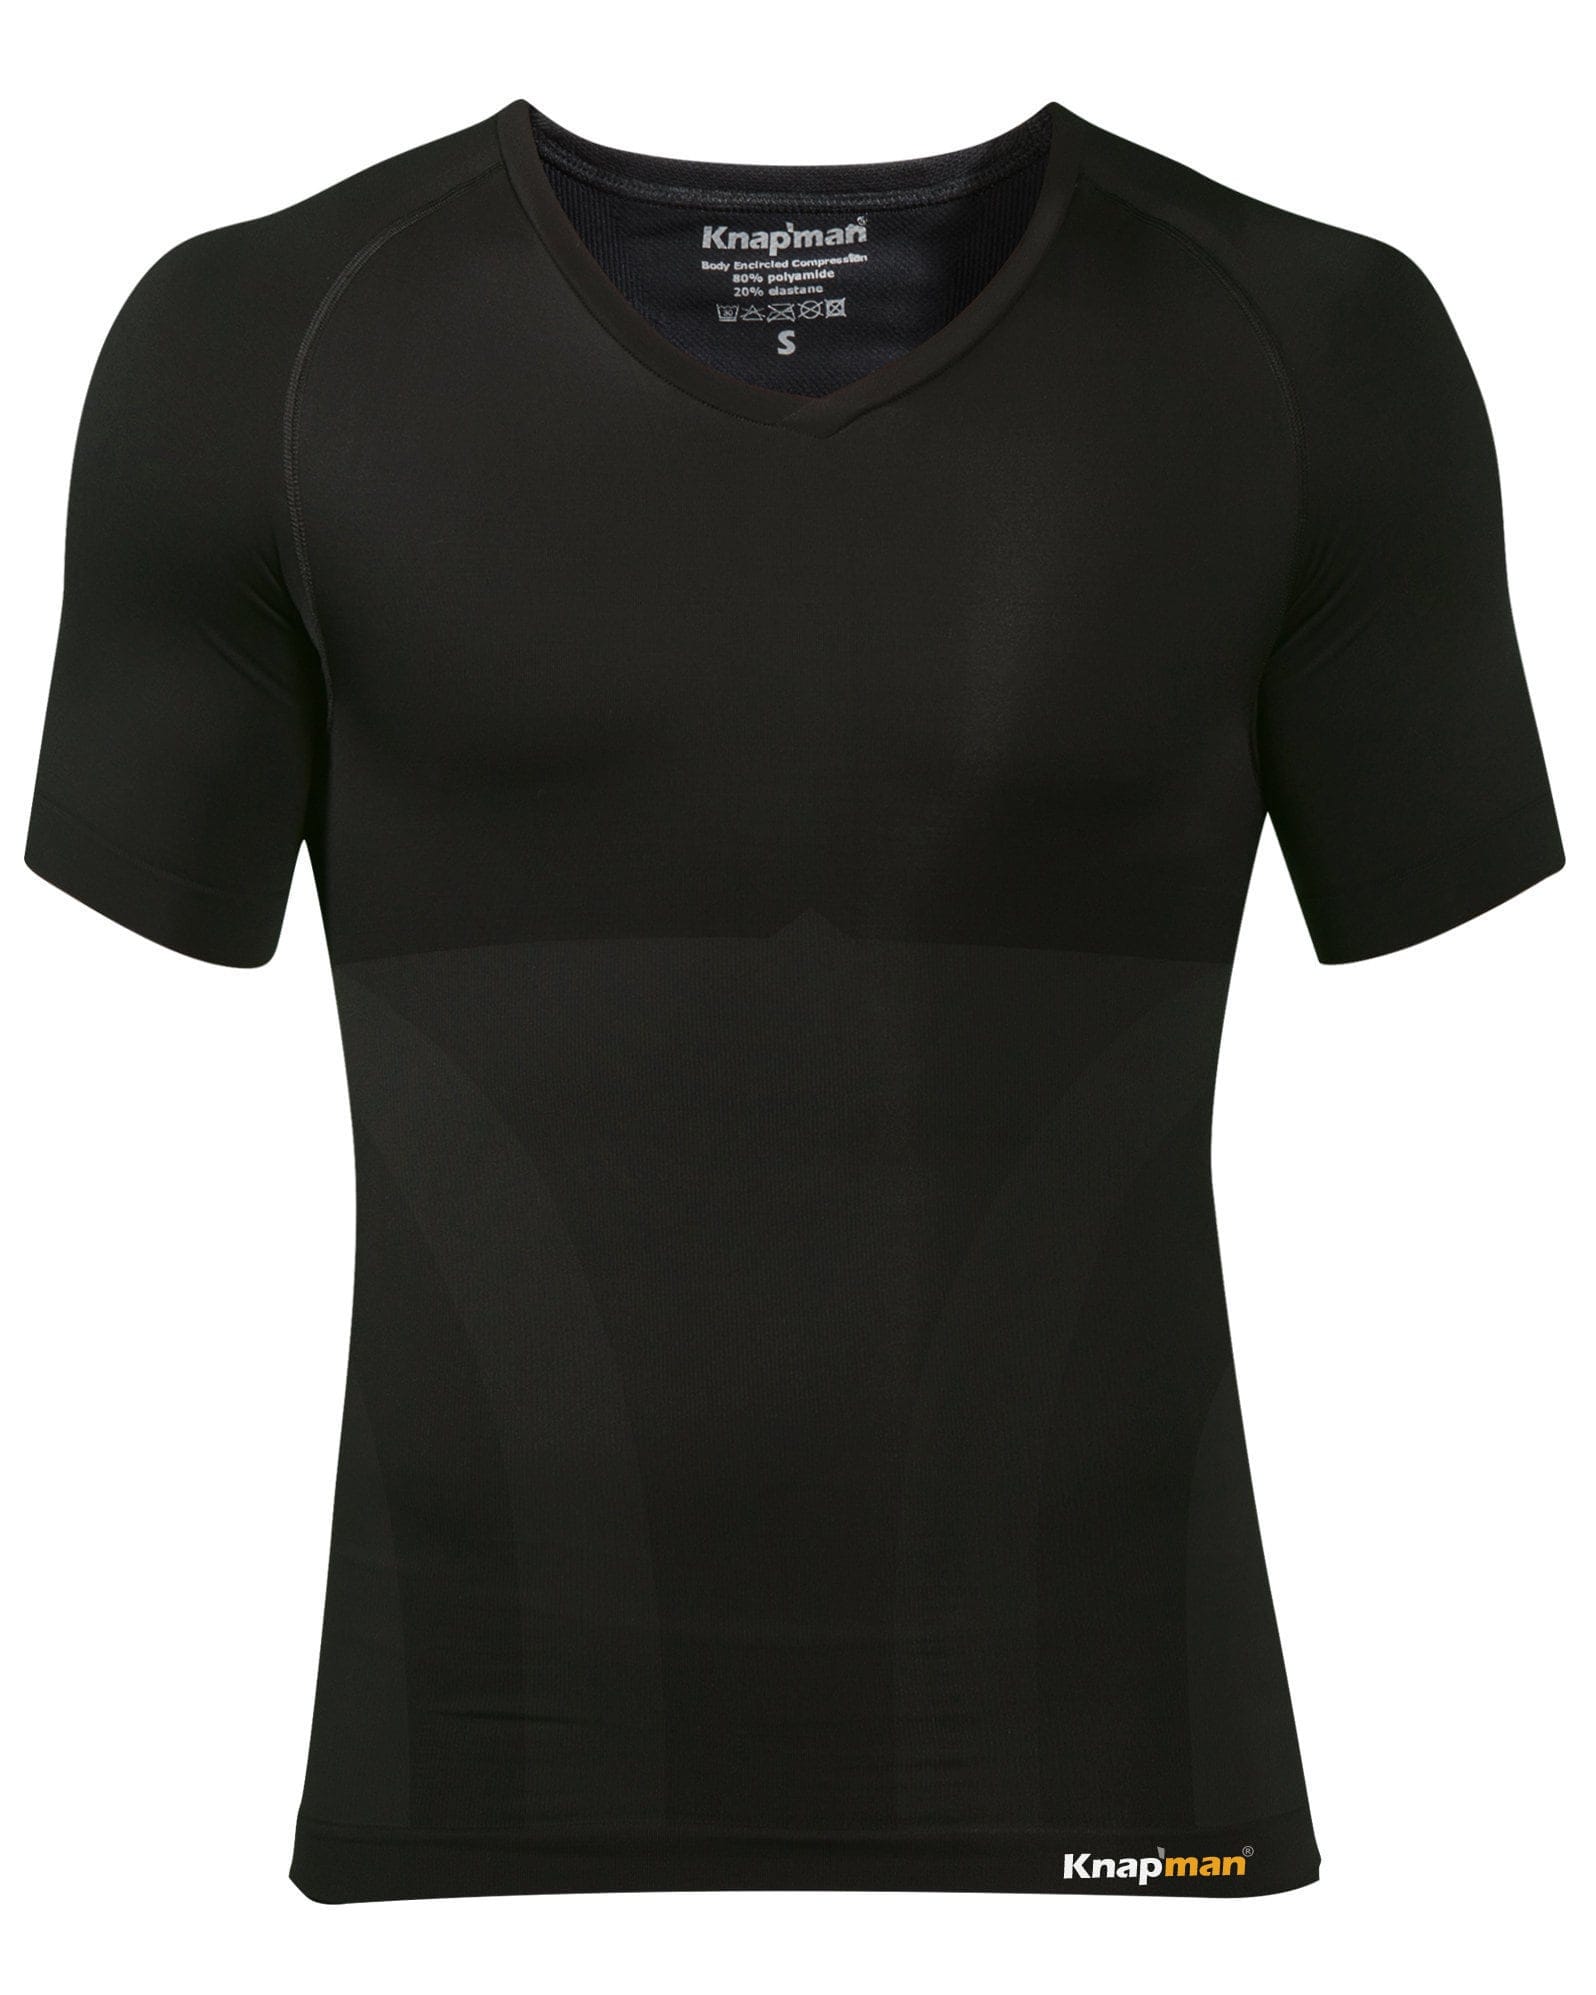 Knap'man Compression Shirt V-Neck Black